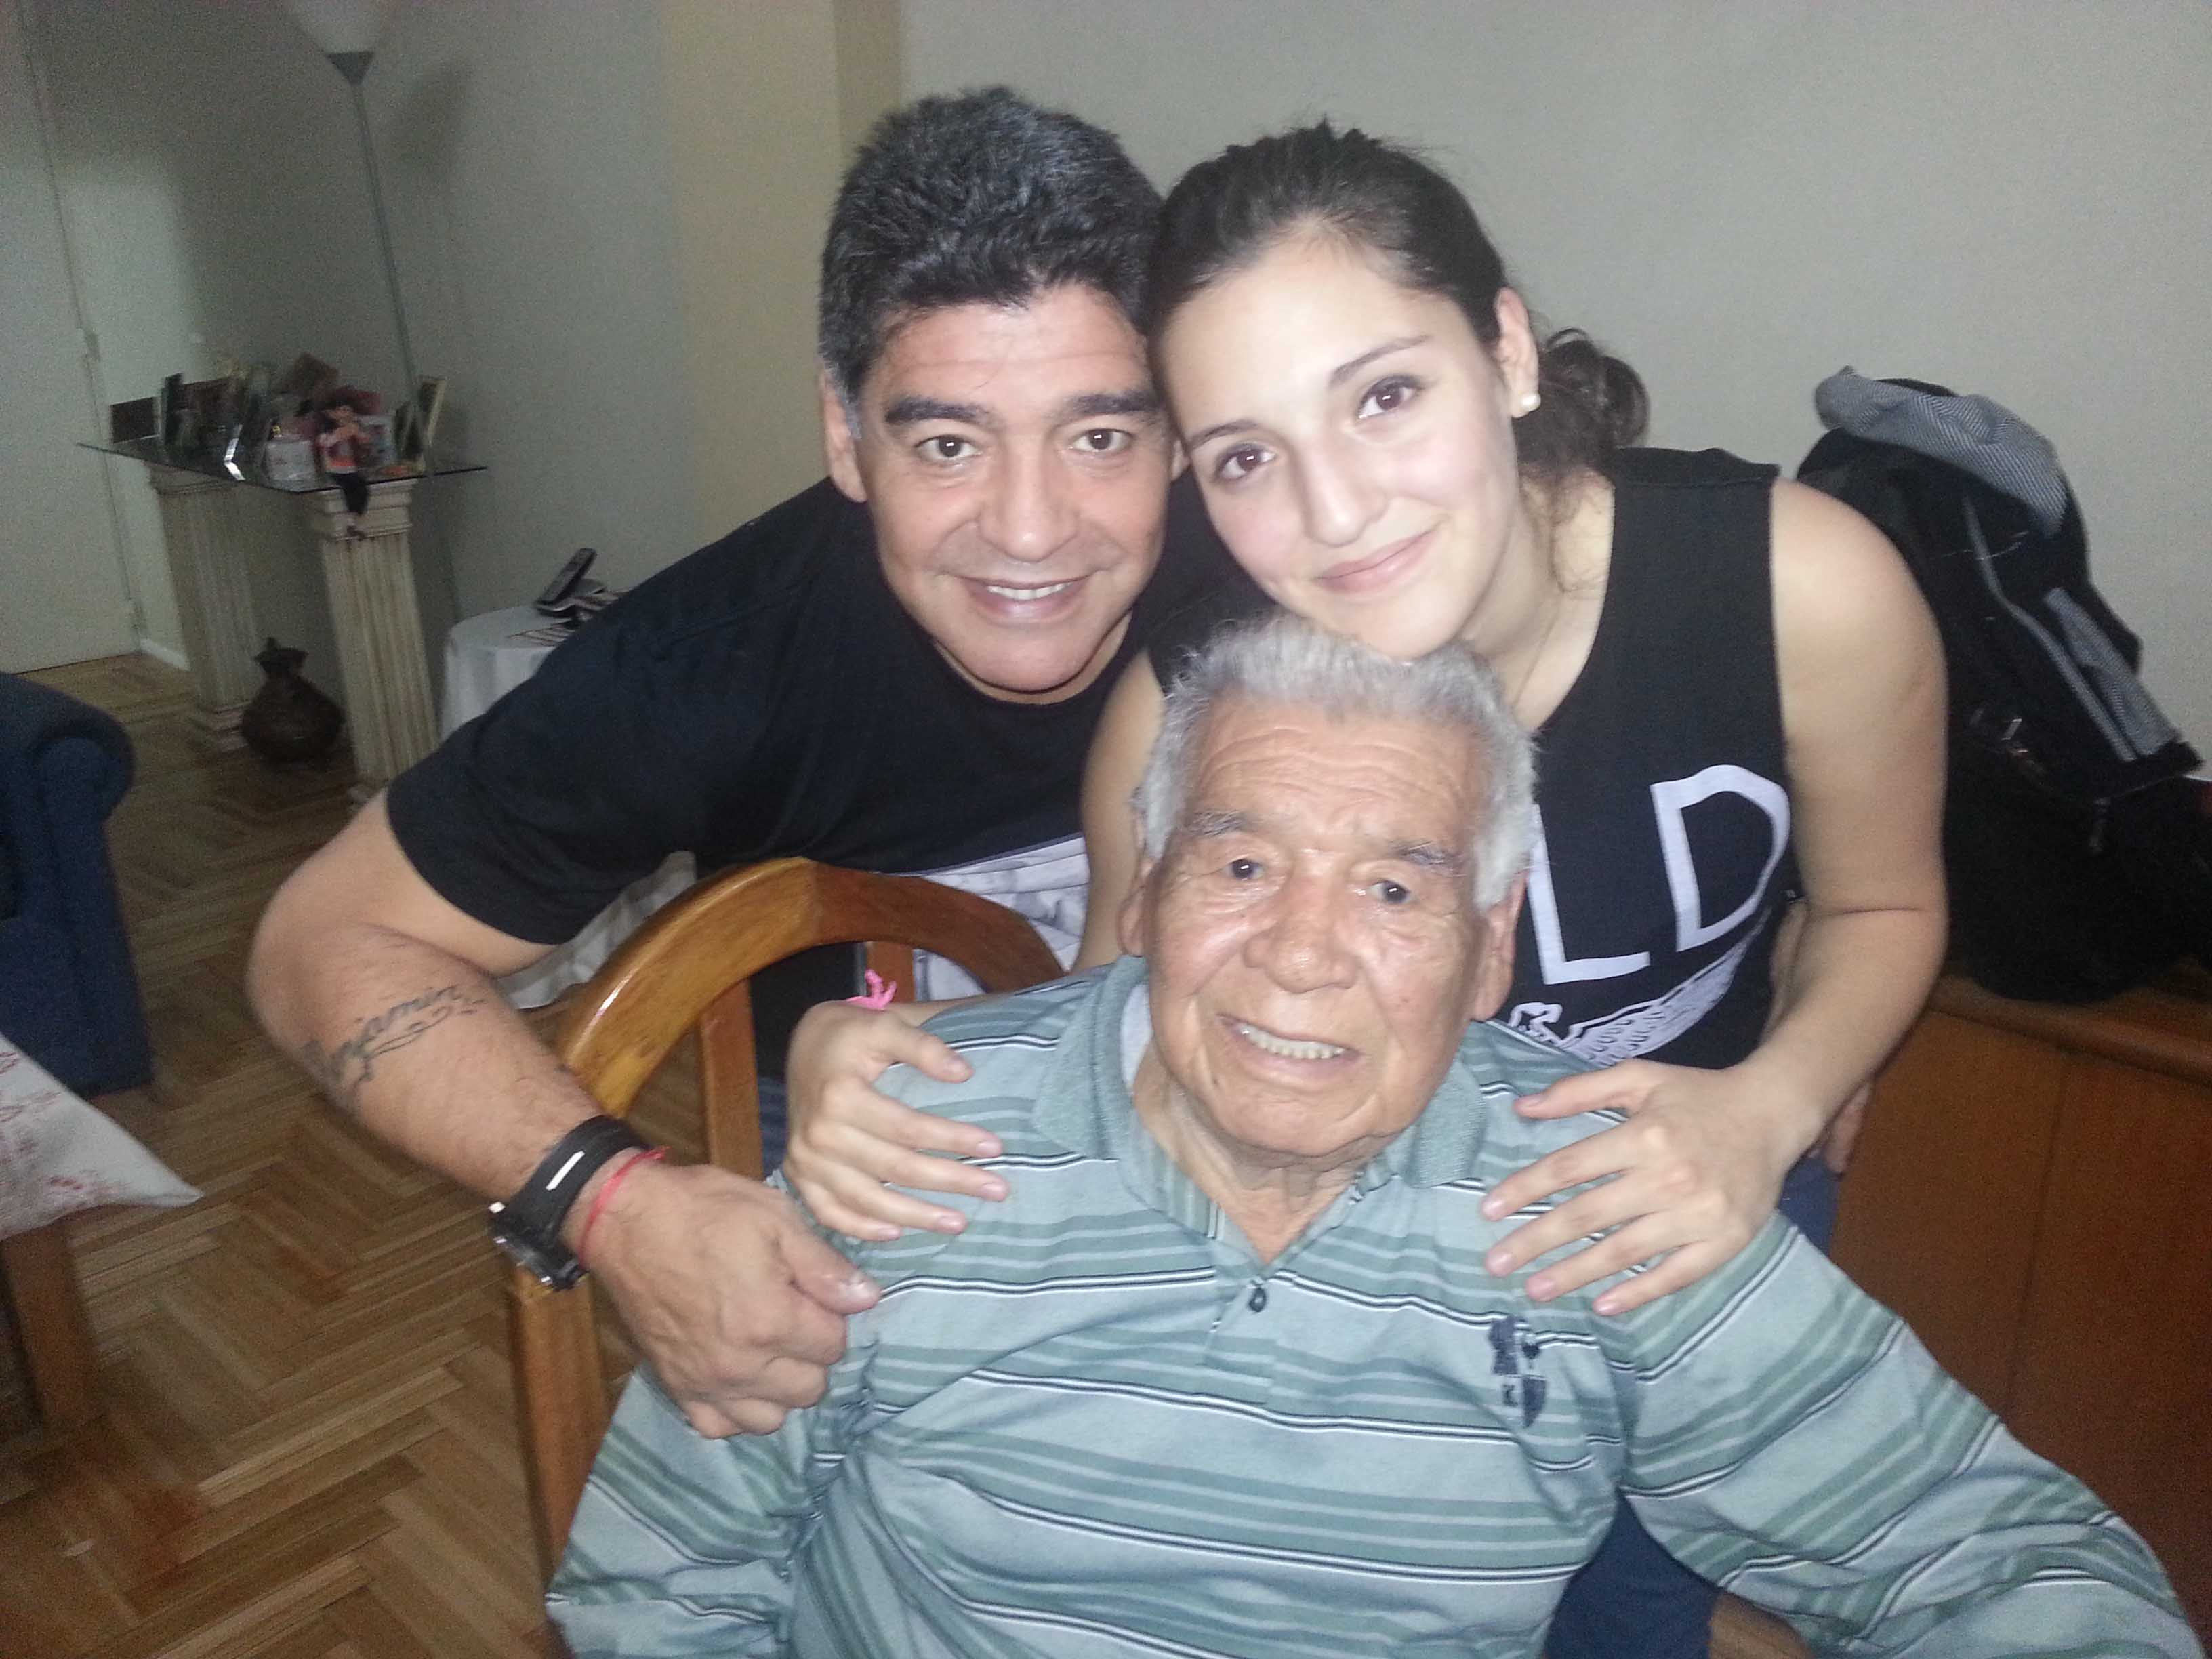 La historia jamás contada Maradona: cómo conoció a Diego y el sueño que con sus hermanos le deben a su padre - Infobae